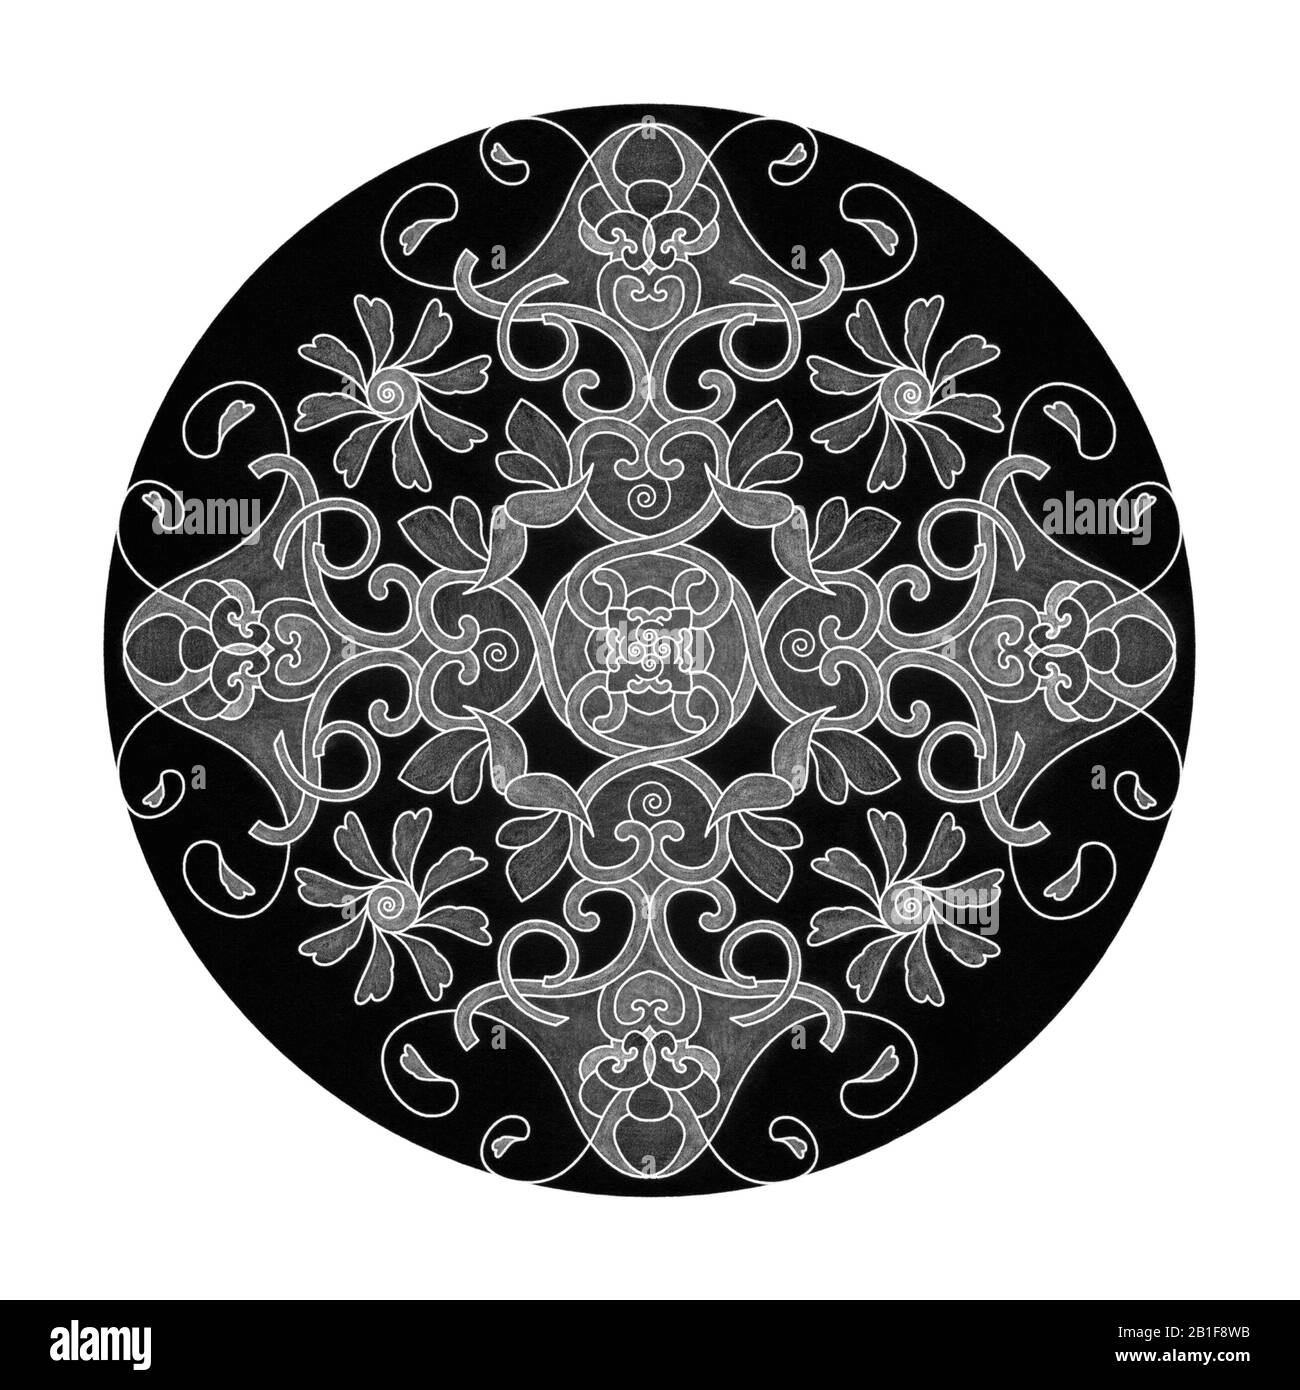 Effetti matita colorati. Illustrazione mandala nero, bianco e grigio. Cuore, spirale, uccello e flower.Abstract. Elemento decorativo. Foto Stock